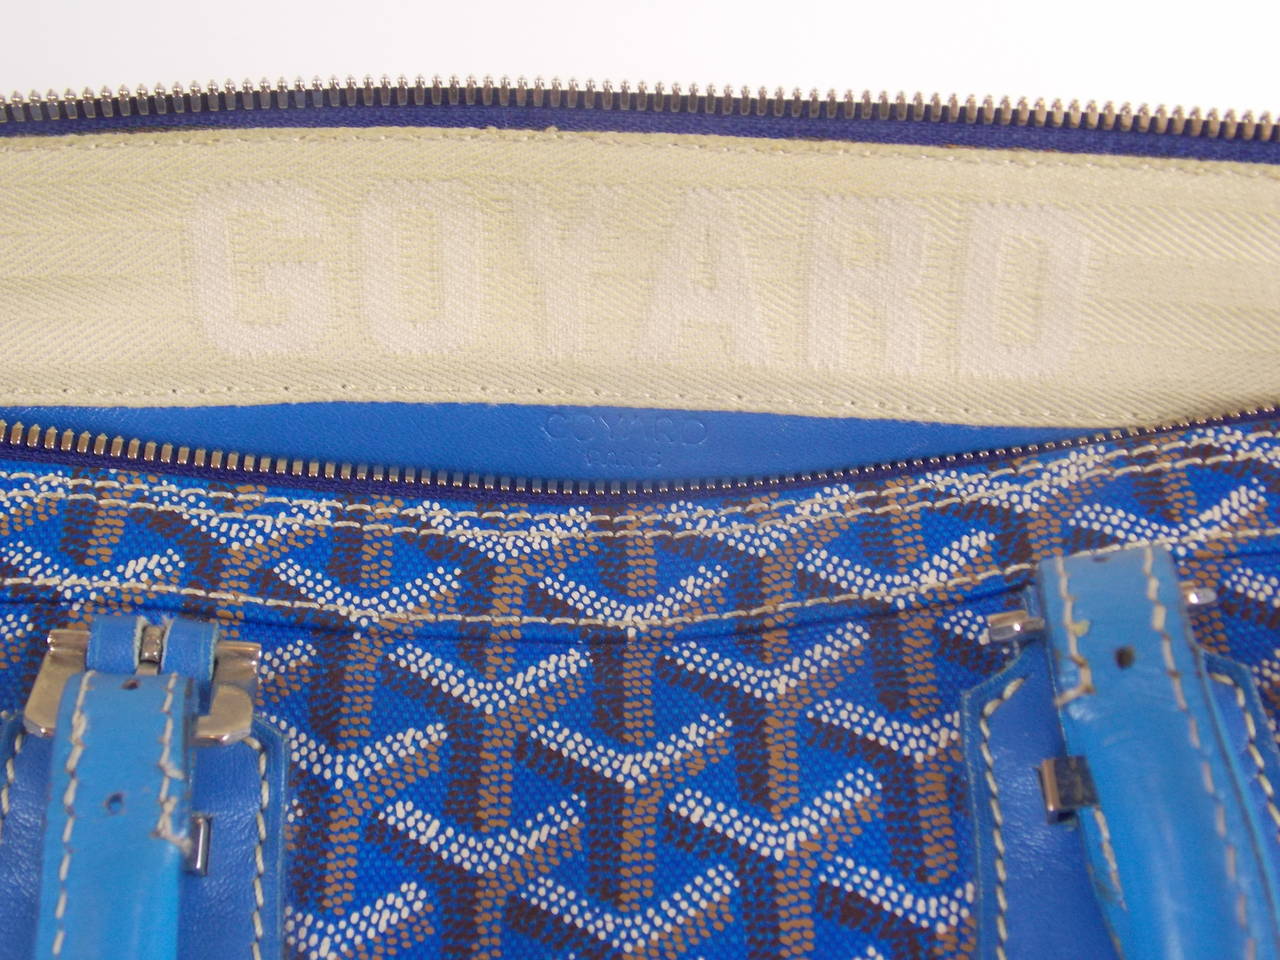 Goyard Backpack -2 For Sale on 1stDibs  goyard backpack price, goyard  backpack for sale, goyard bookbag